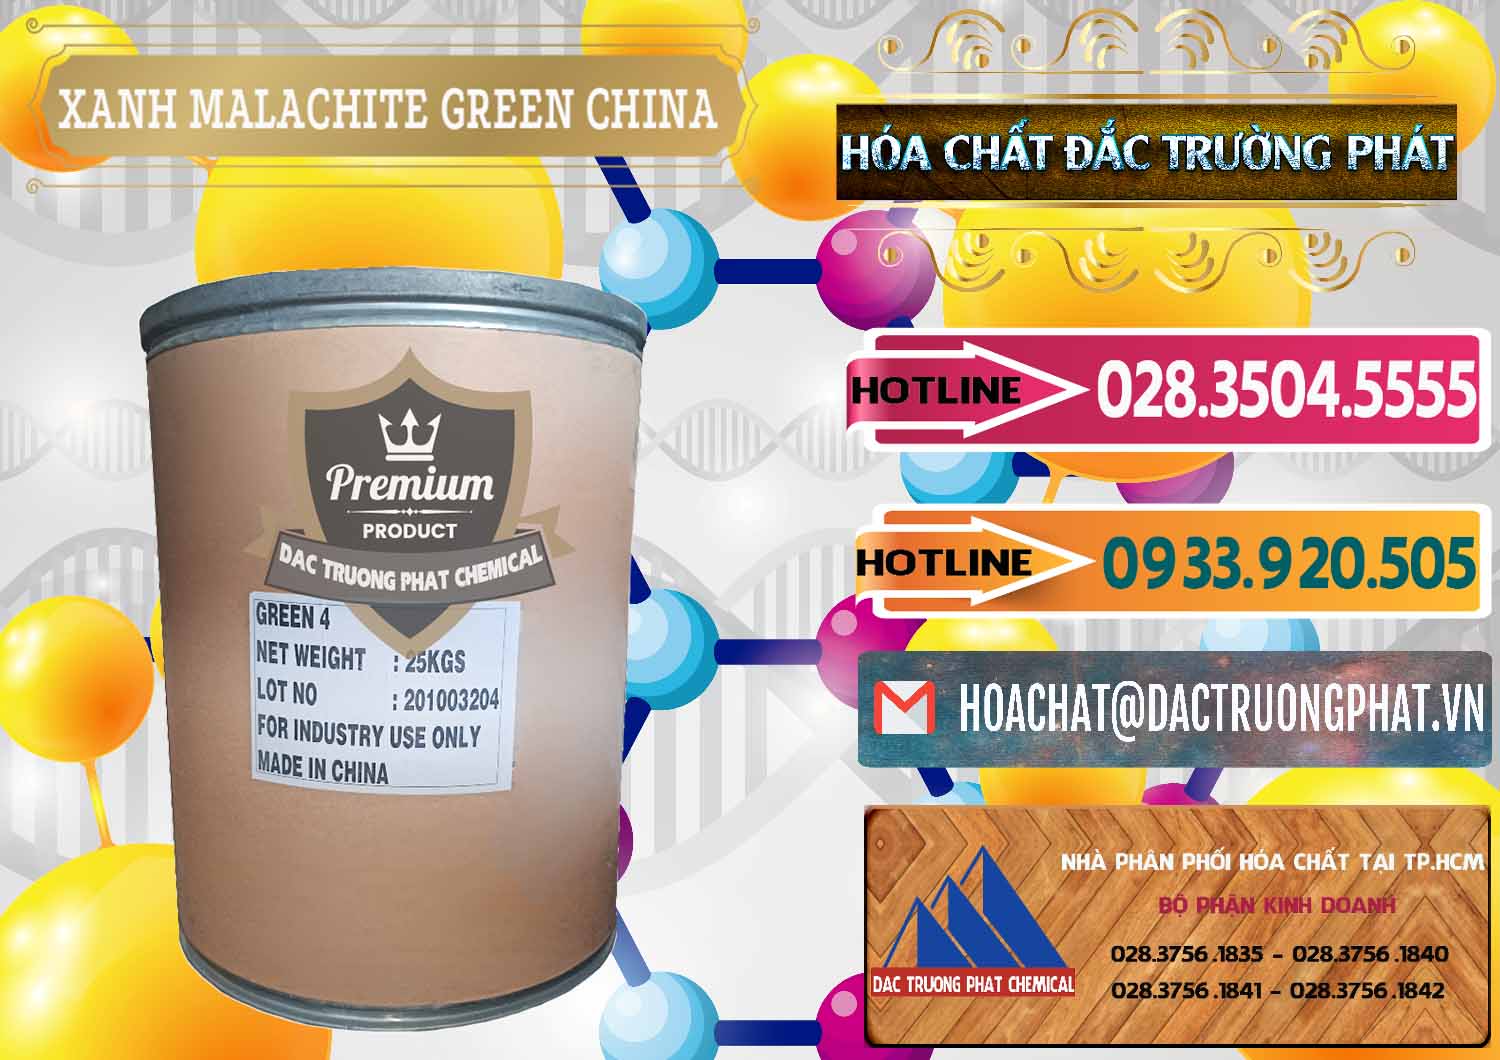 Kinh doanh & bán Xanh Malachite Green Trung Quốc China - 0325 - Cung cấp - phân phối hóa chất tại TP.HCM - dactruongphat.vn